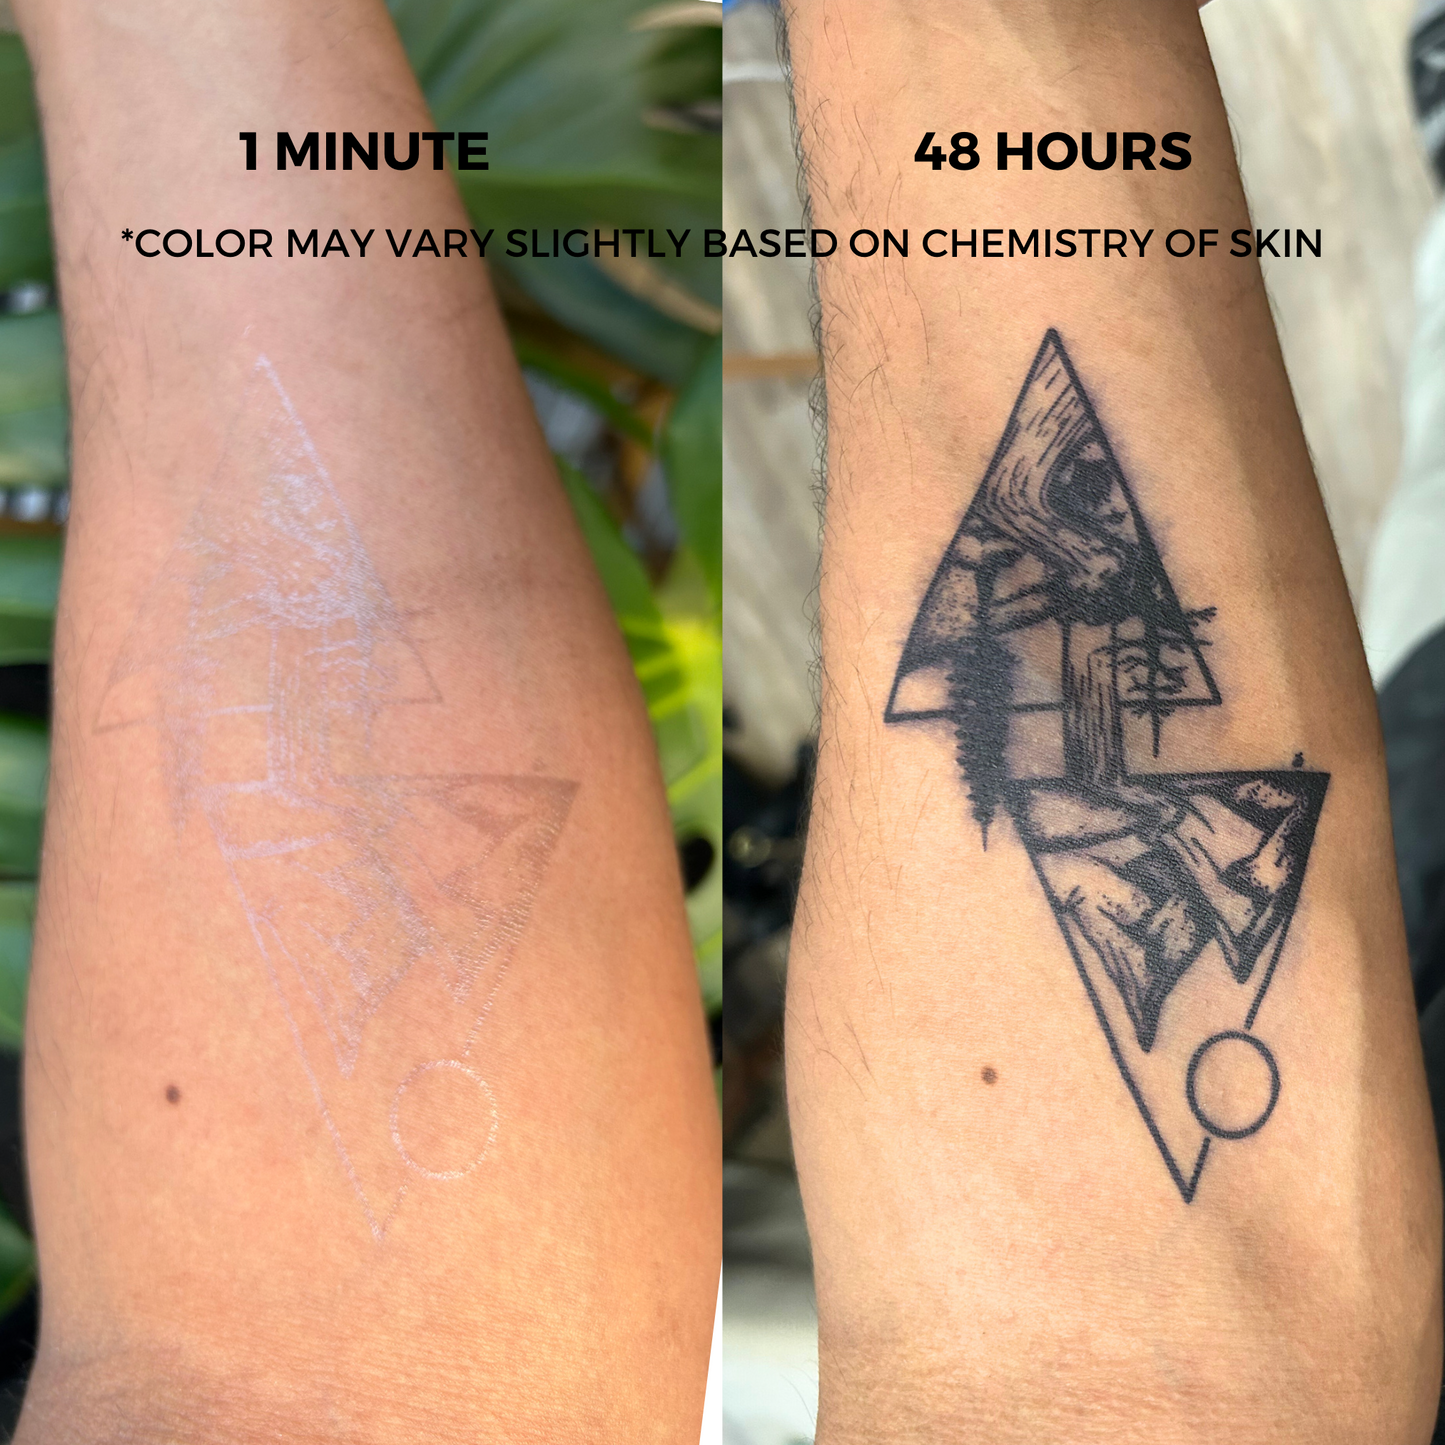 Turtle Tattoo | 2 Week Temporary Tattoo | Plant Based Vegan Tattoo | Ocean Tattoo | Tribal Tattoo | Festival Tattoo | Matching Tattoo | Gift Idea | Temporary Tattoo | Hawaiian Tattoo